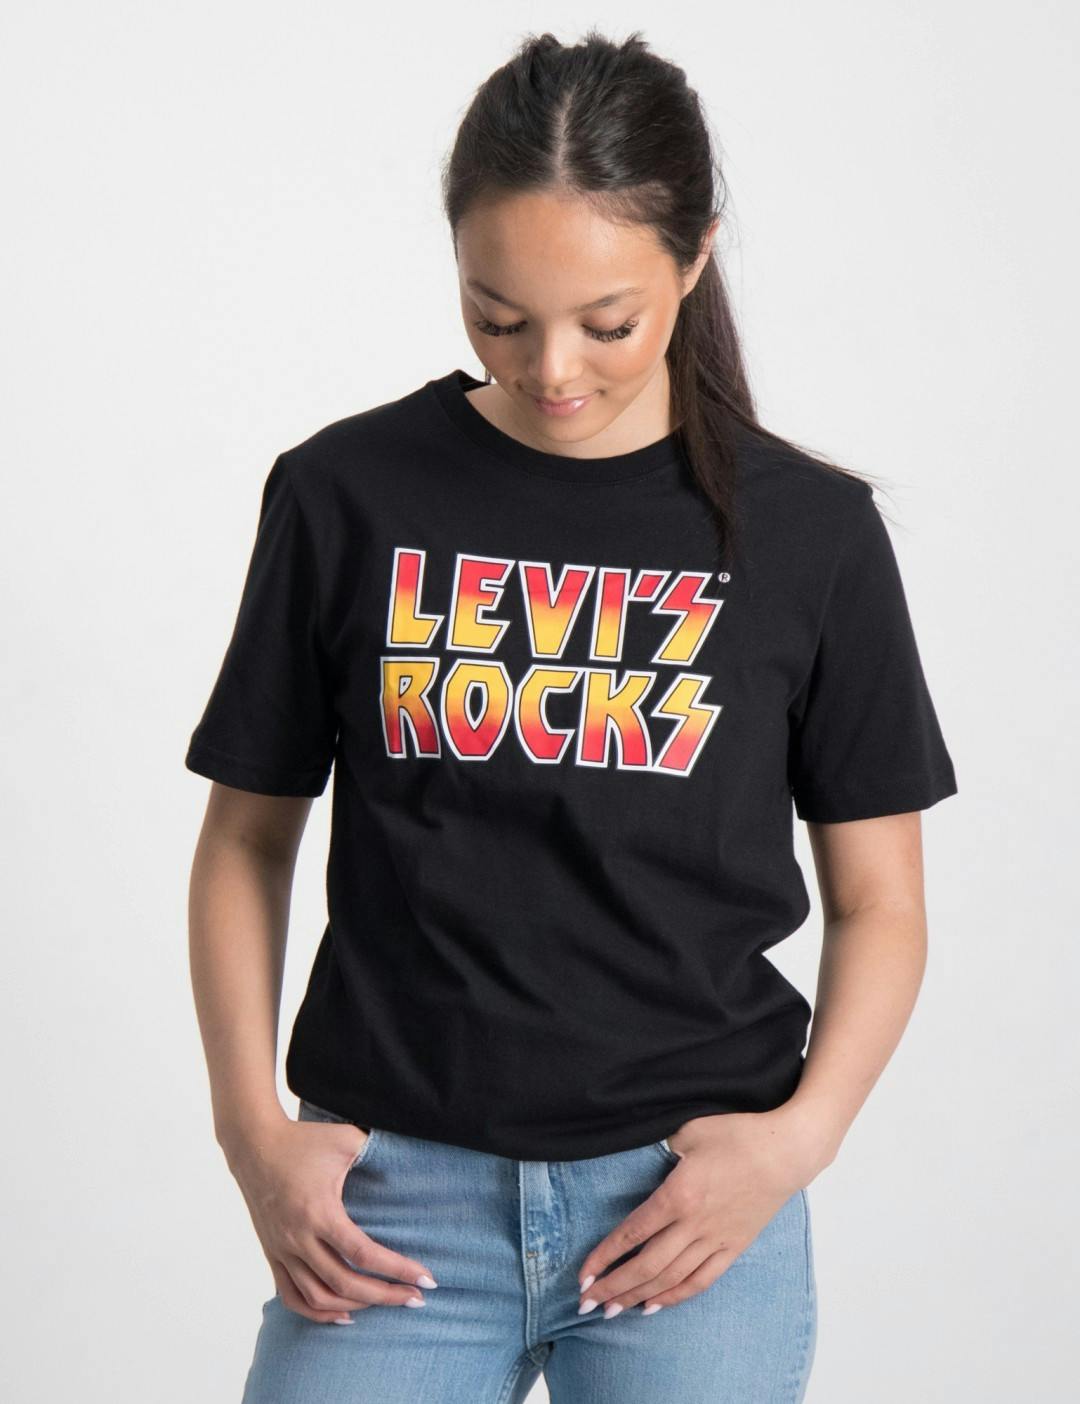 LEVI'S ROCKS TEE